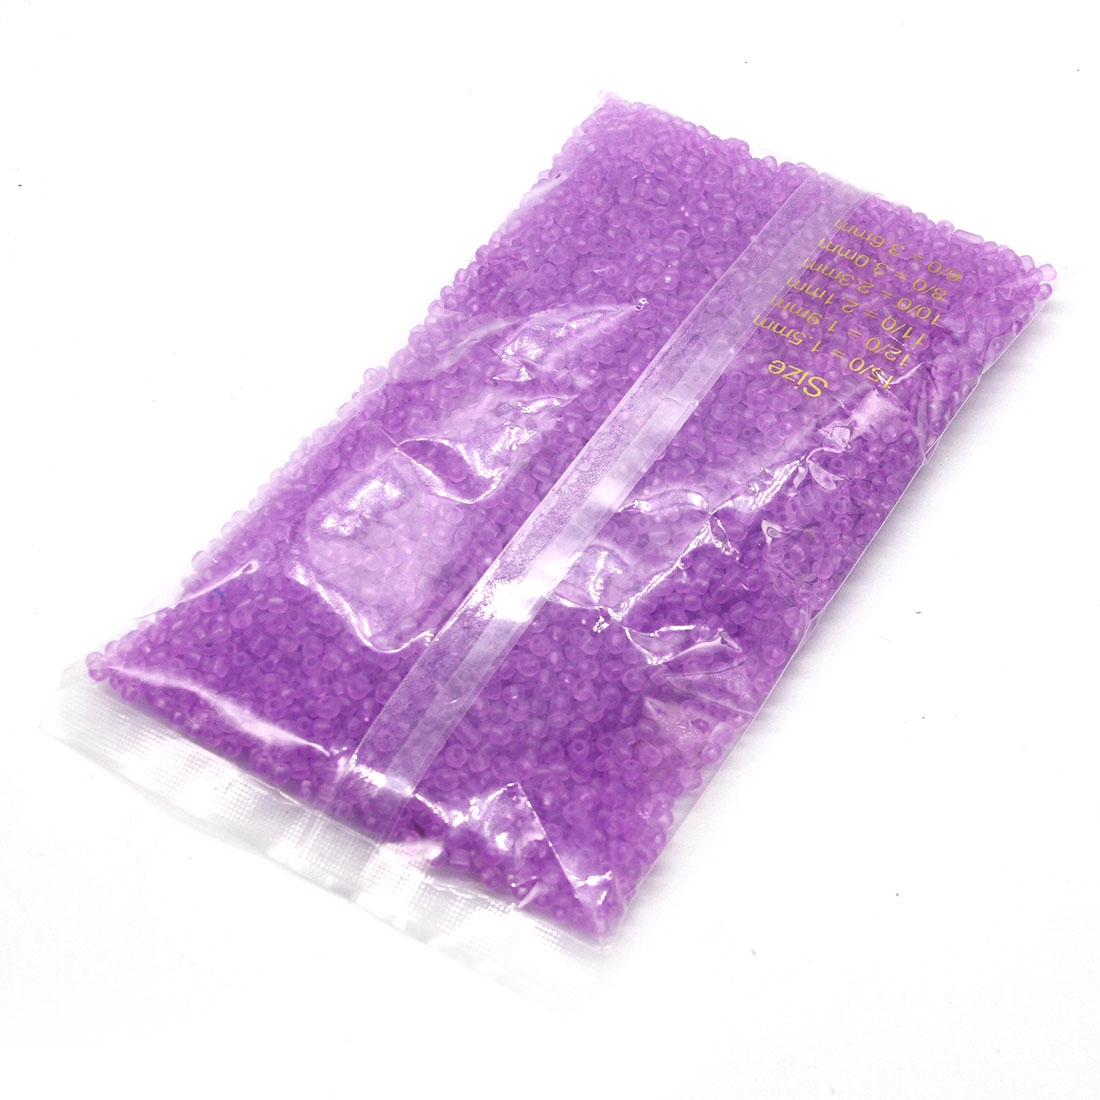 Light violet 2mm 30,000 packs